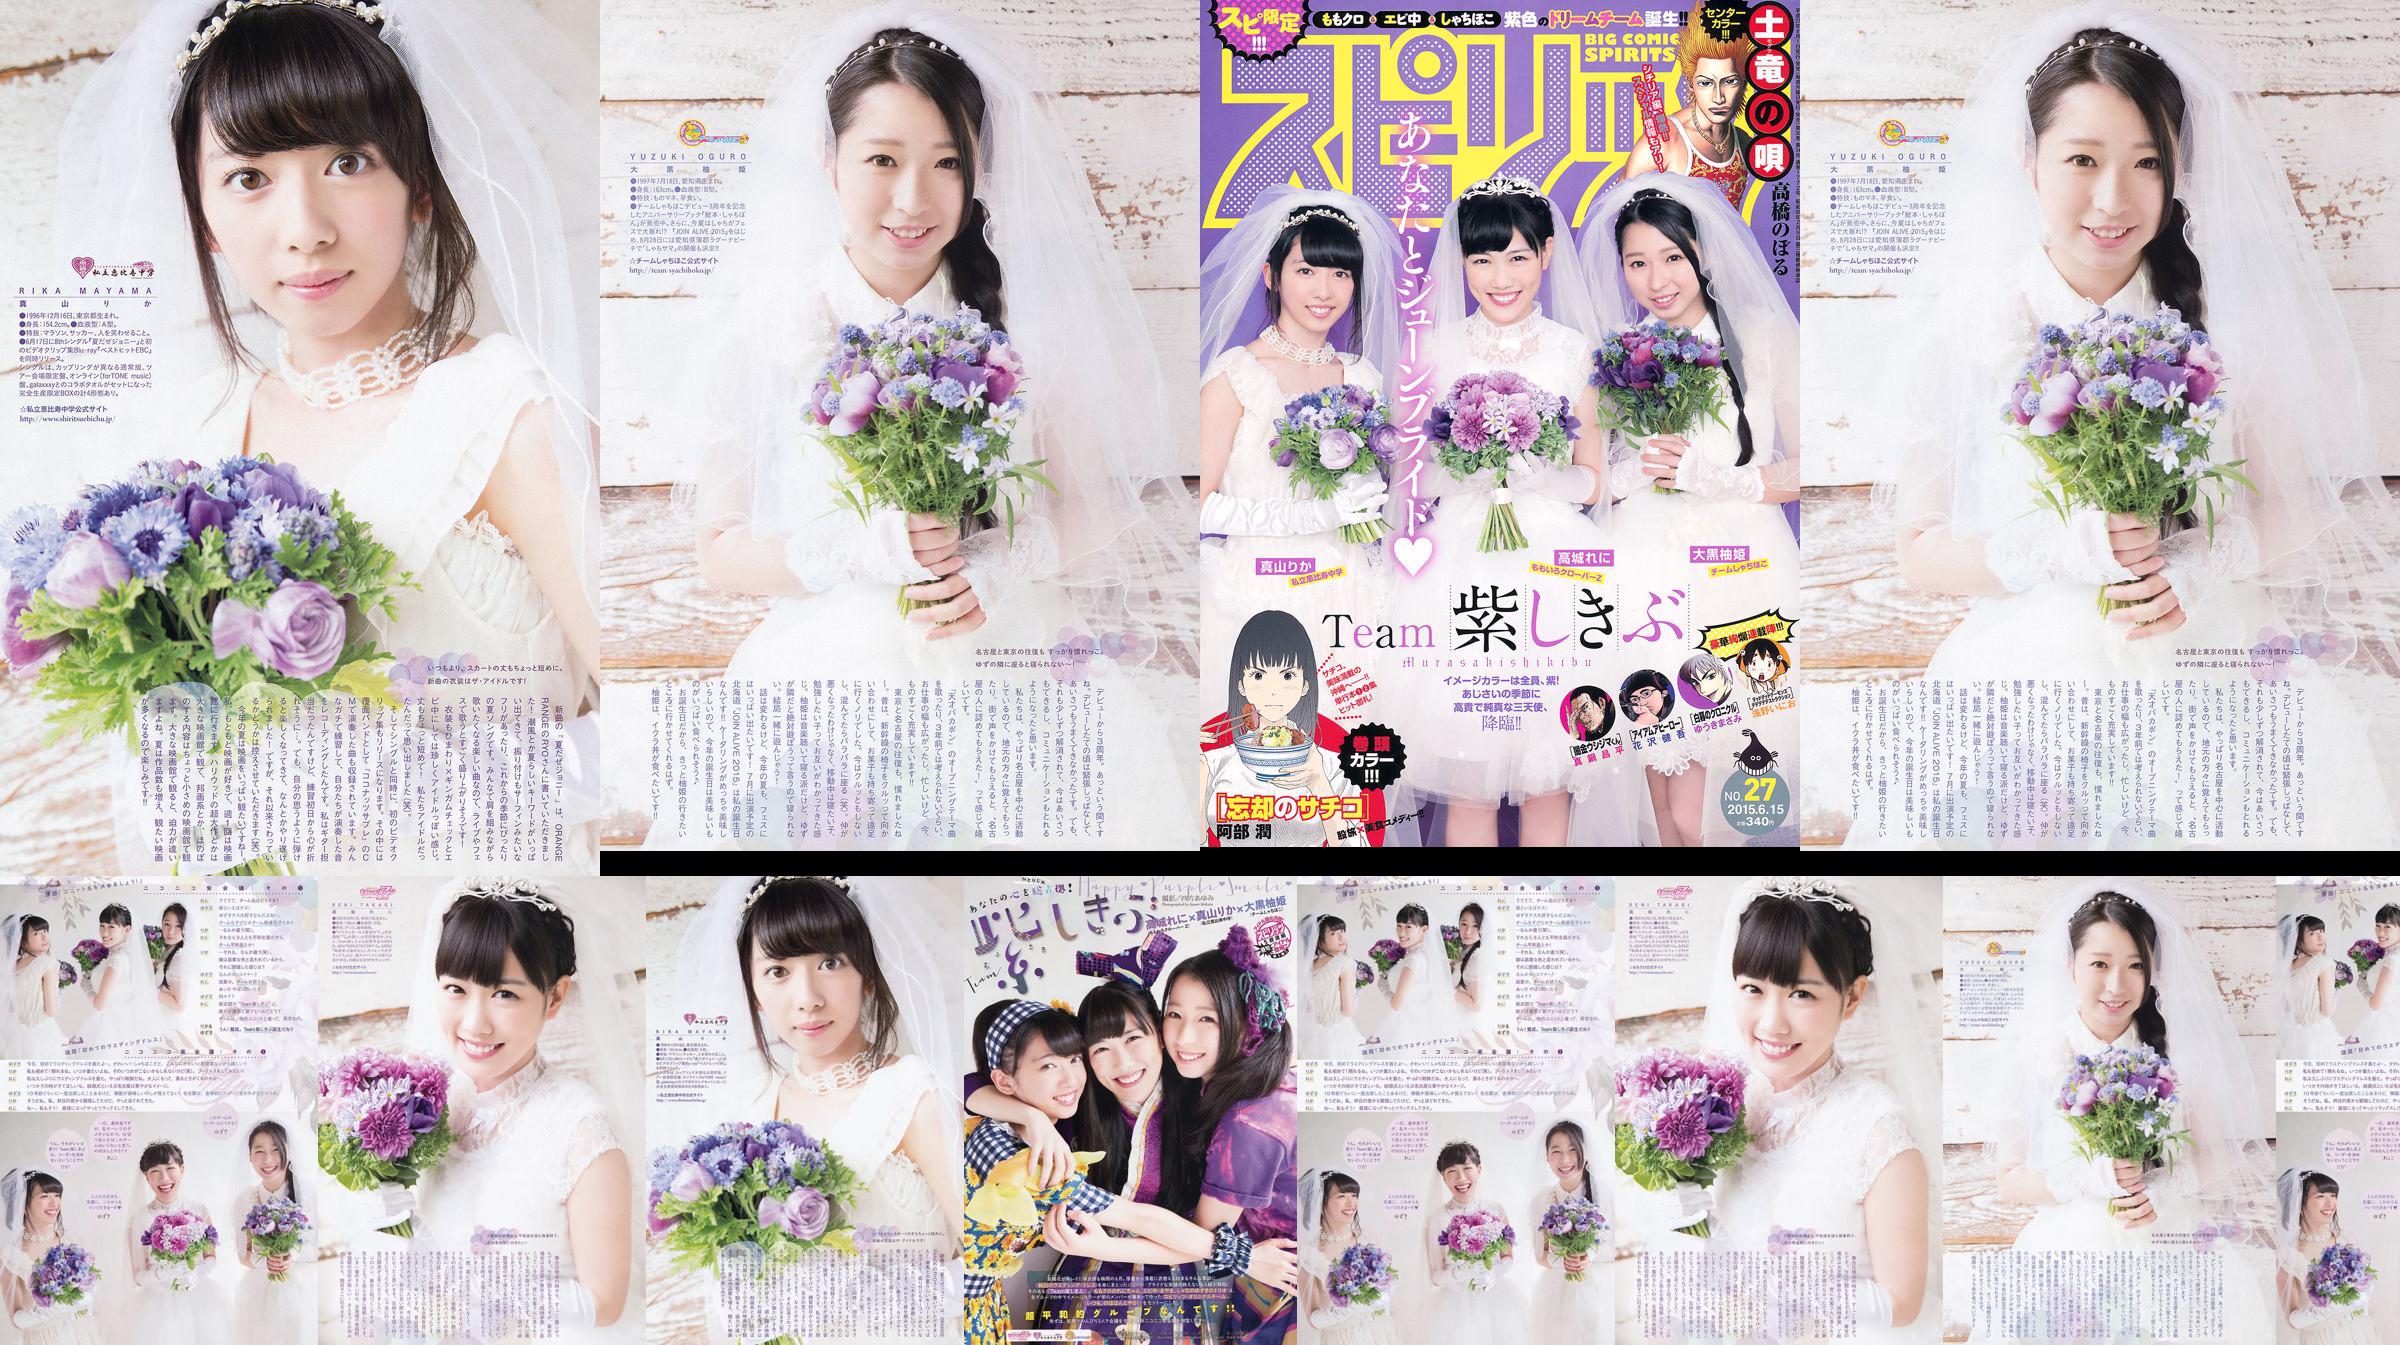 [Weekly Big Comic Spirits] 高城れに大黒柚姫真山りか 2015 No.27 Photo Magazine No.380ae9 หน้า 1